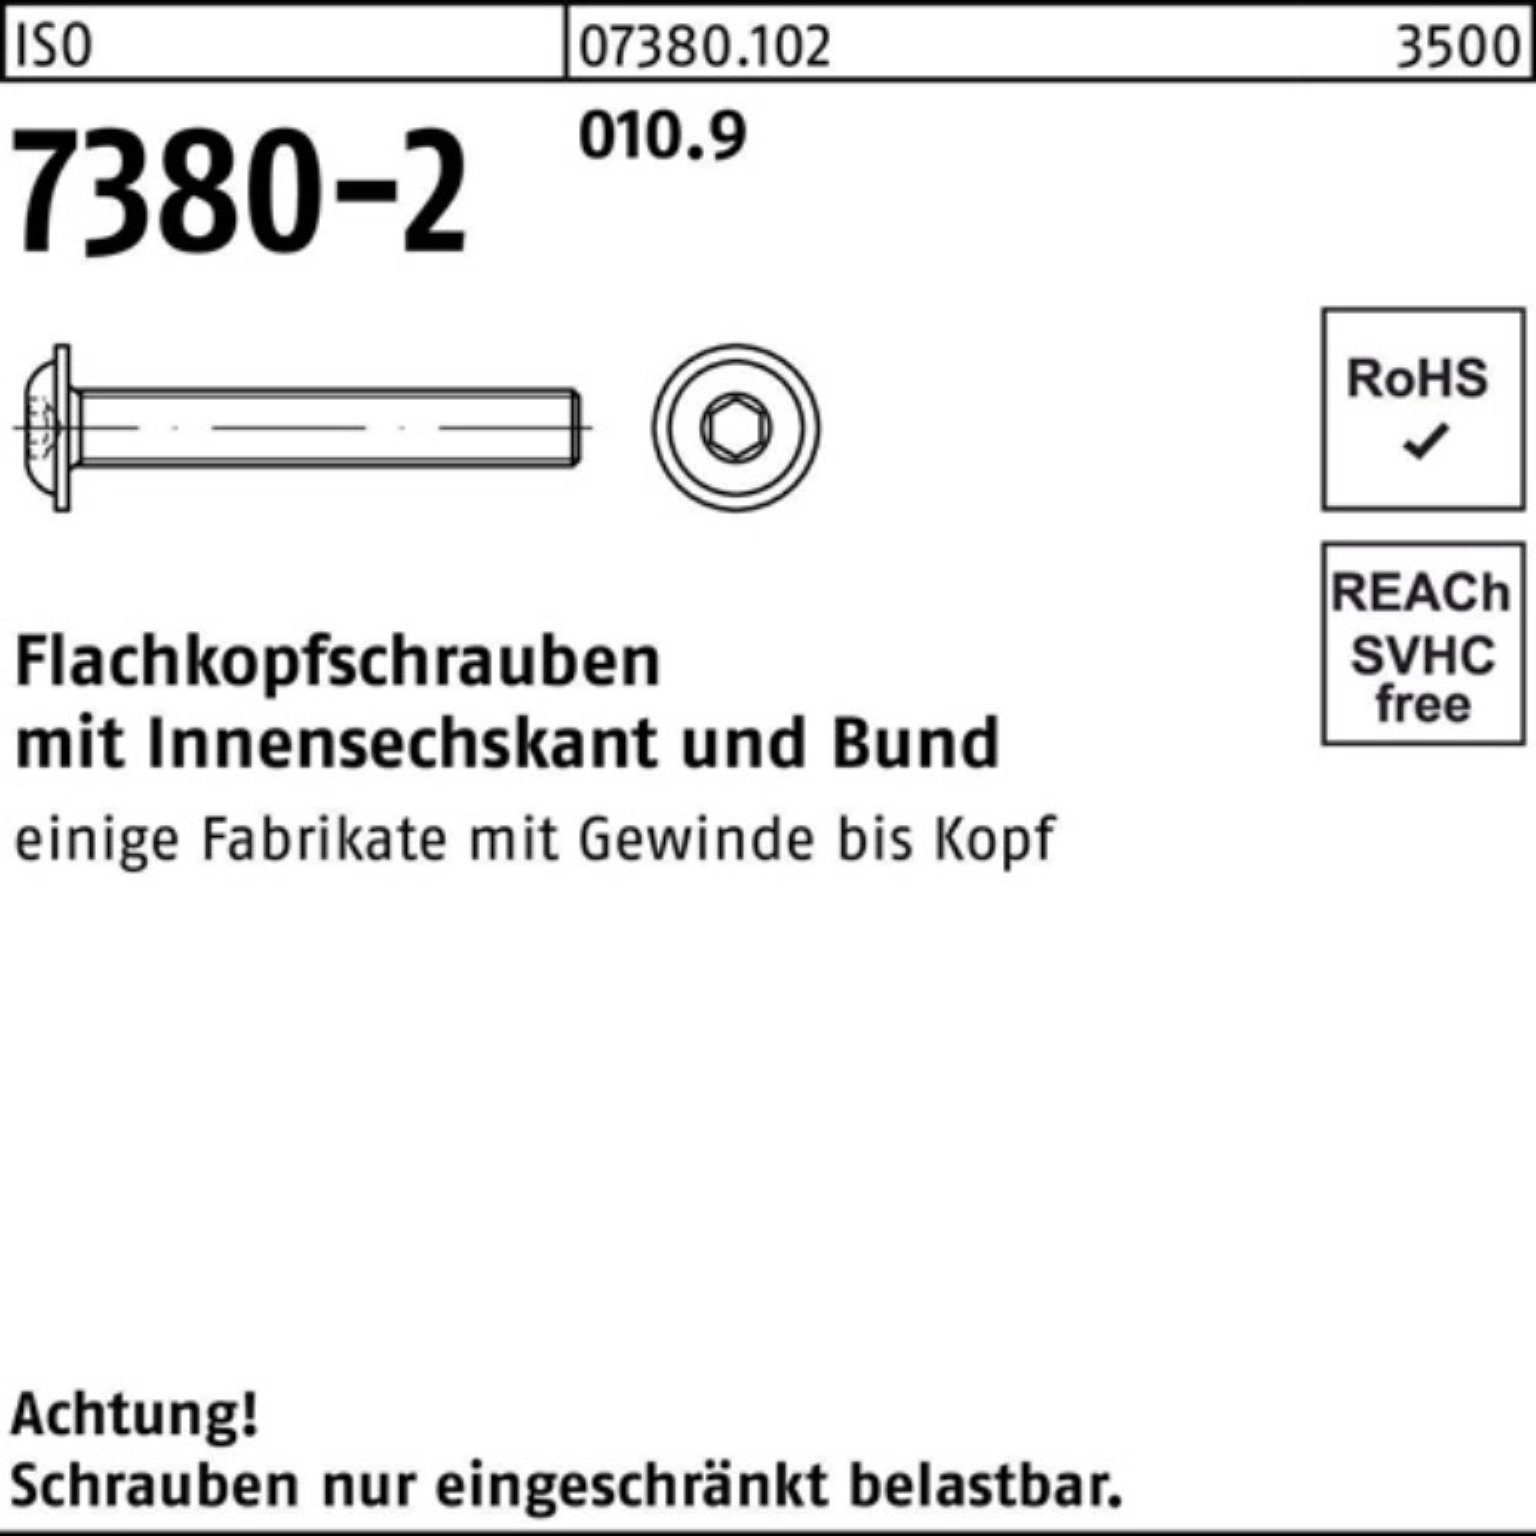 Reyher Schraube Flachkopfschraube 500er 010.9 M4x 7380-2 10 ISO 50 Pack Bund/Innen-6kt